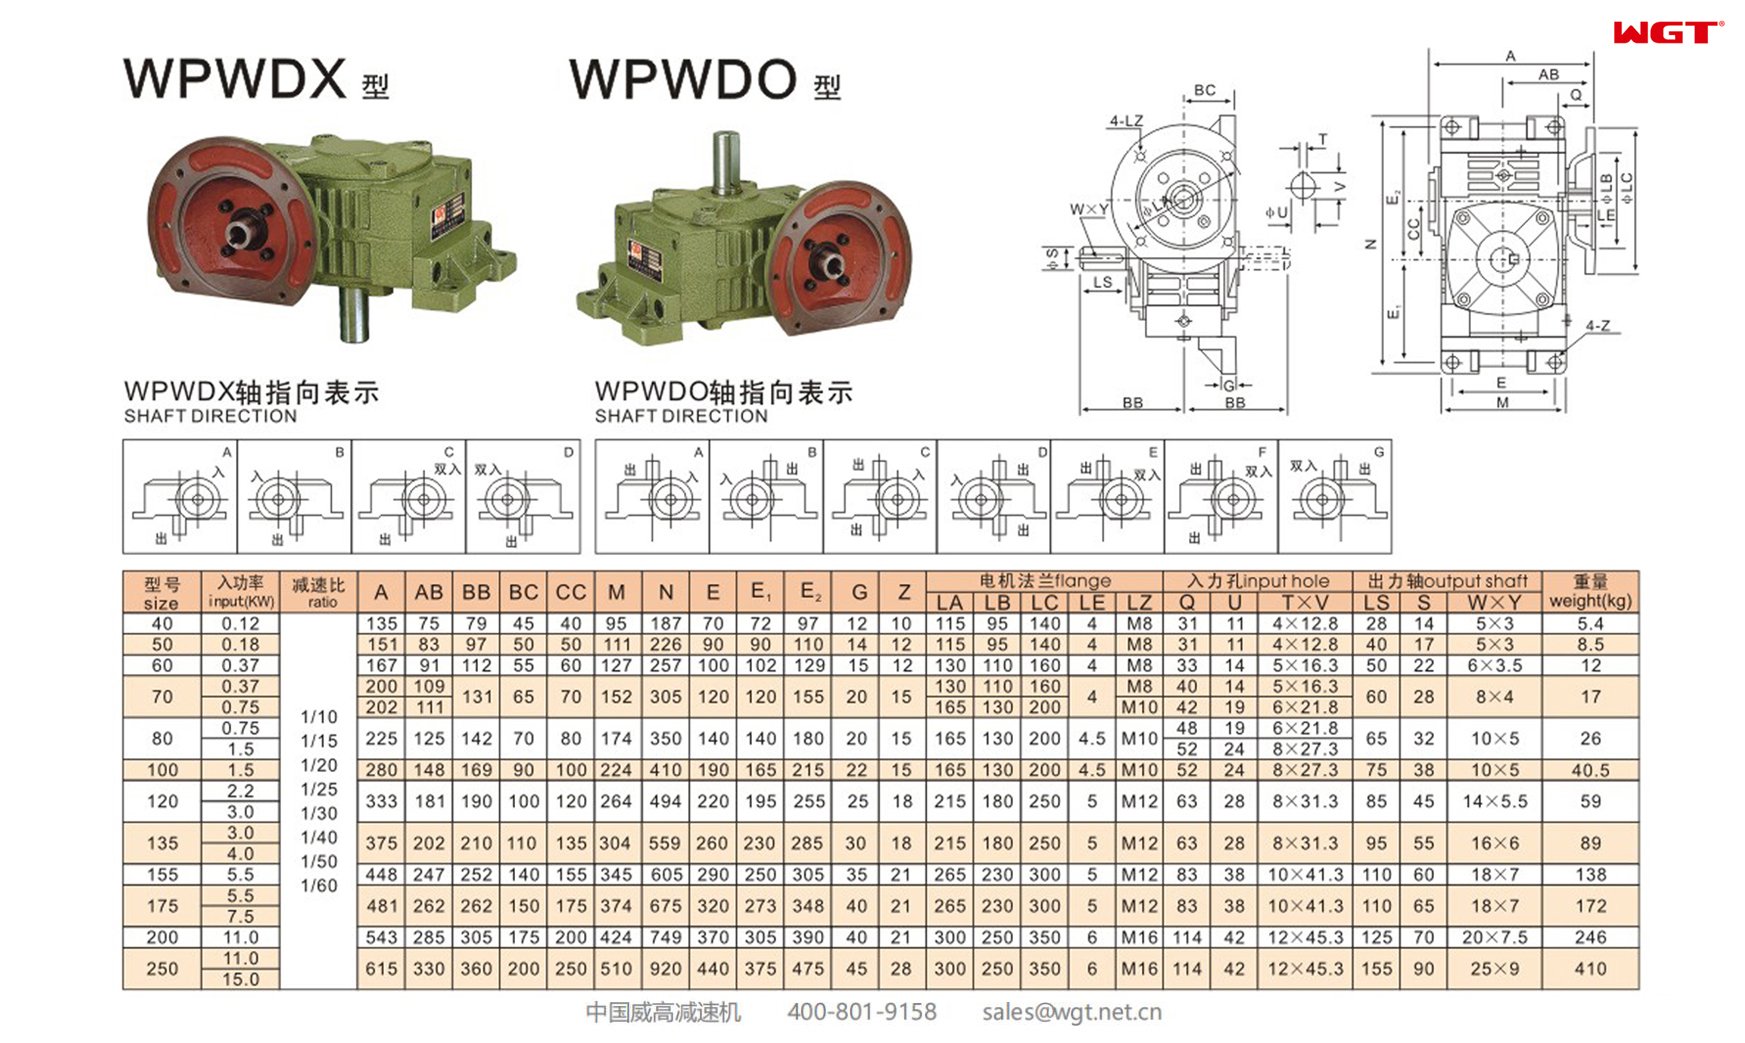 WPWDX WPWDO155 蜗轮减速机 万向减速机